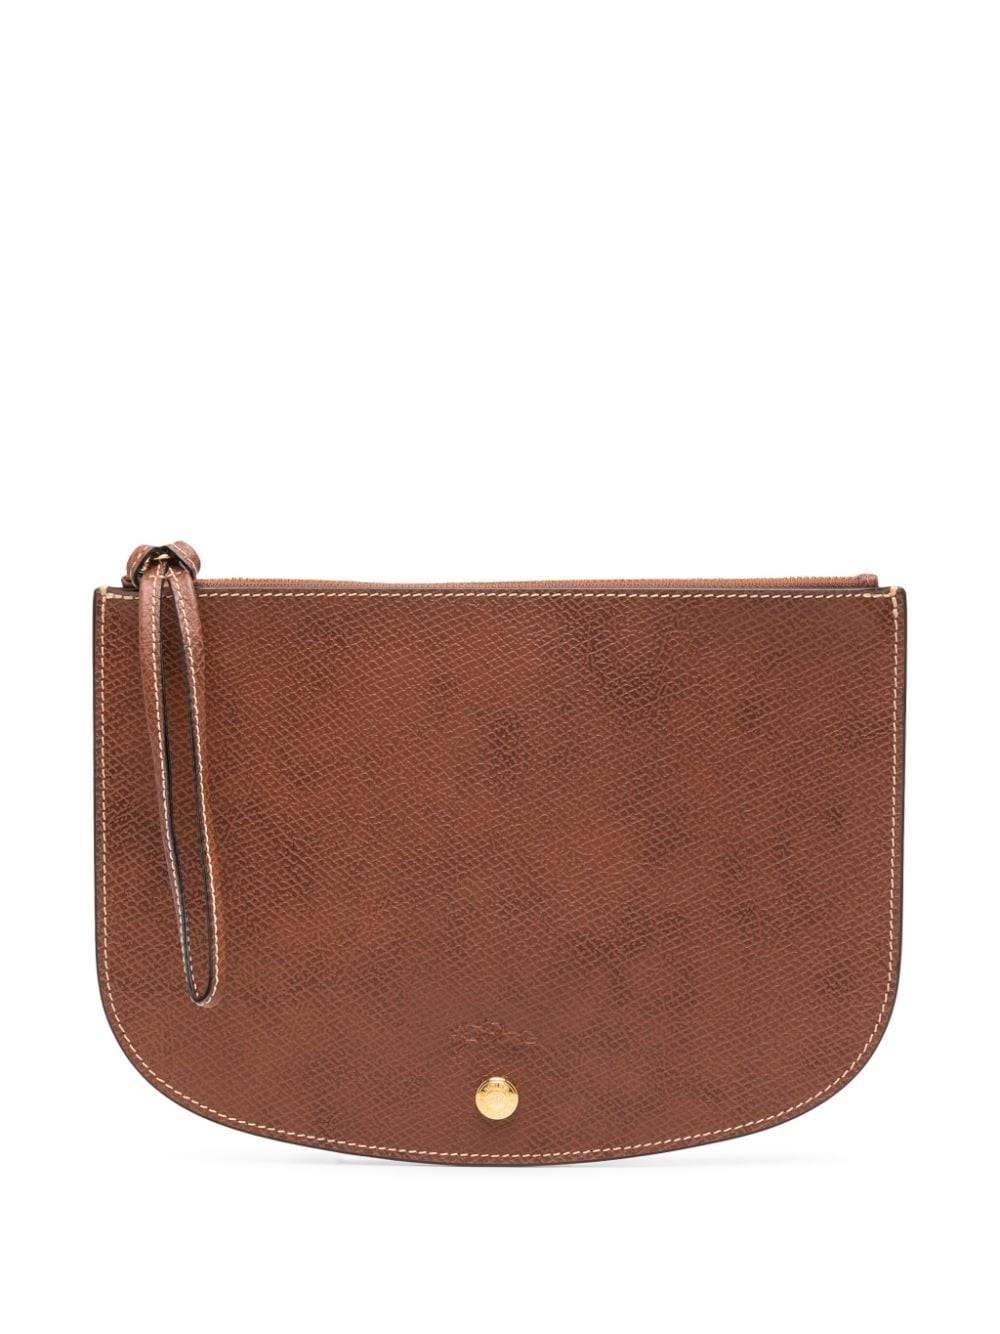 Longchamp Épure Clutch Bag In Brown